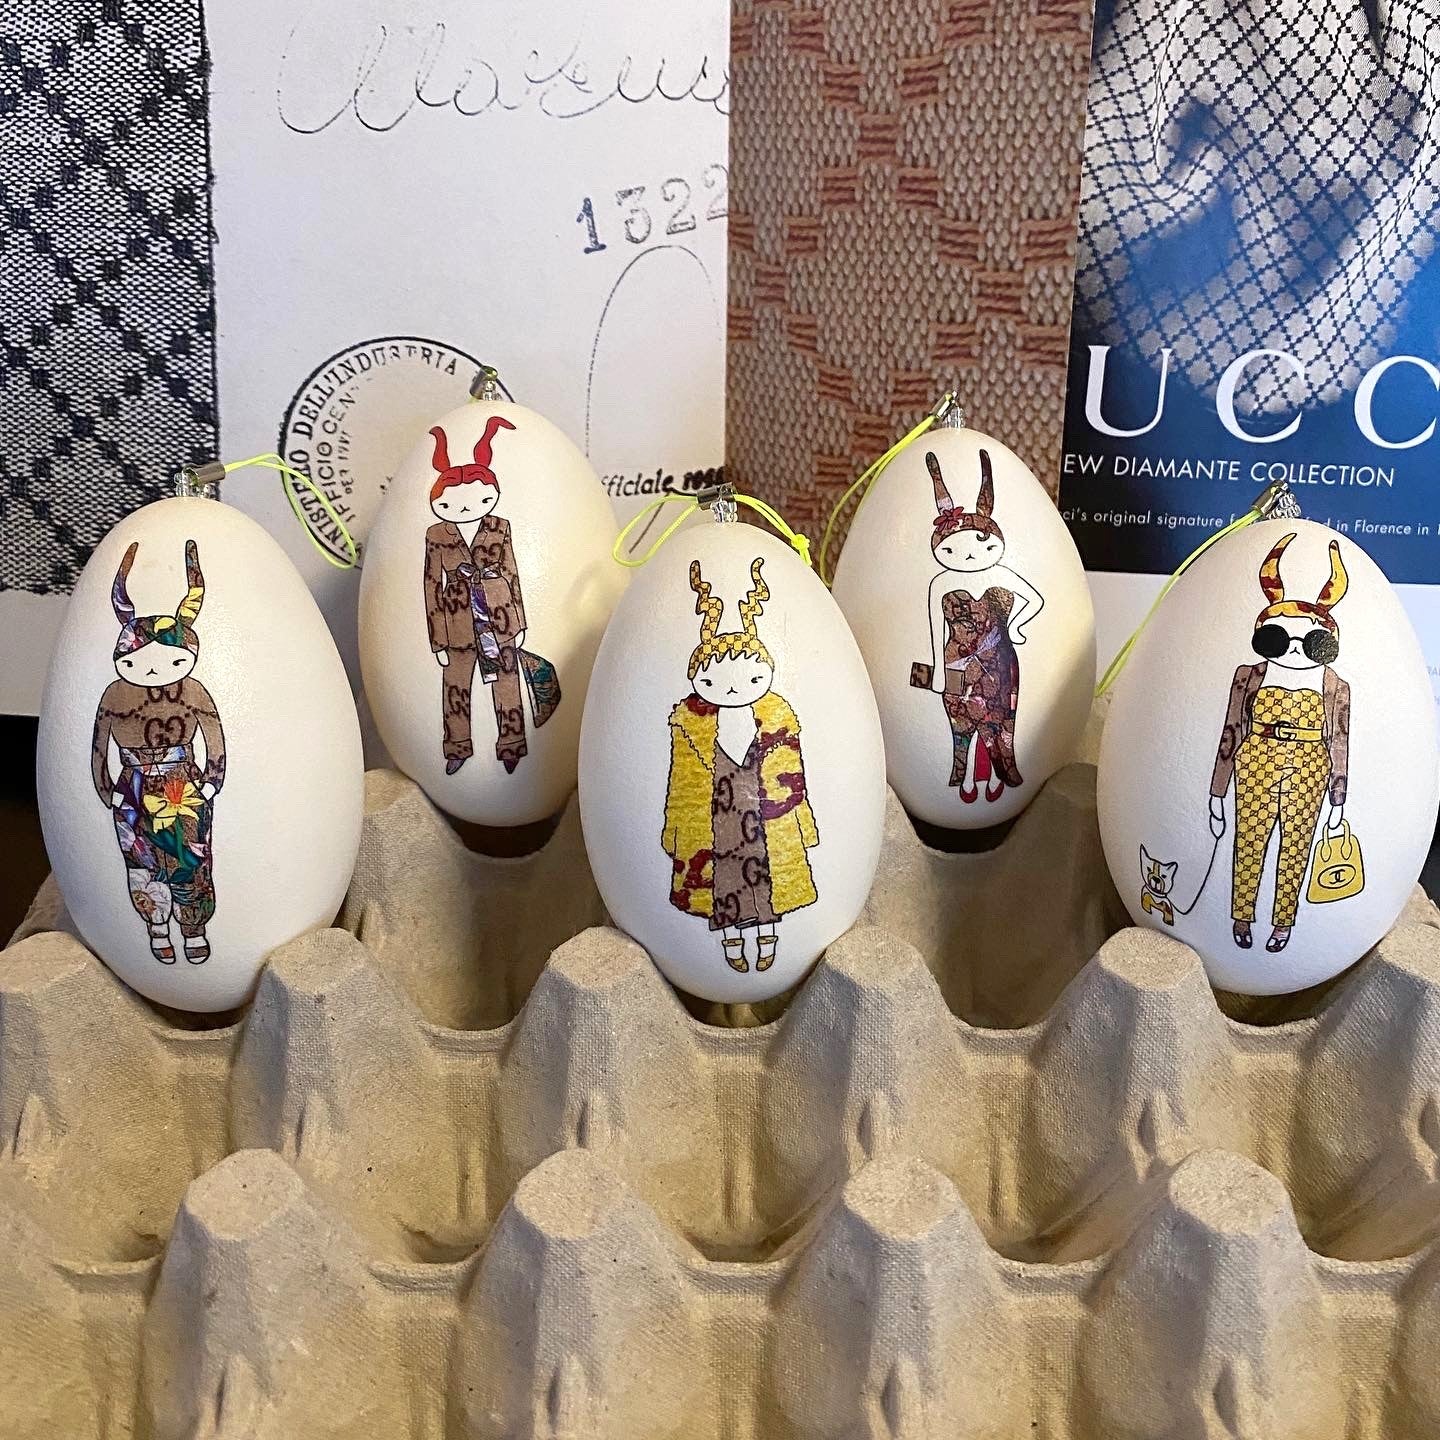 Eier Ostereier-Deko: Echte ei-nzigartig Kunst – trifft auf